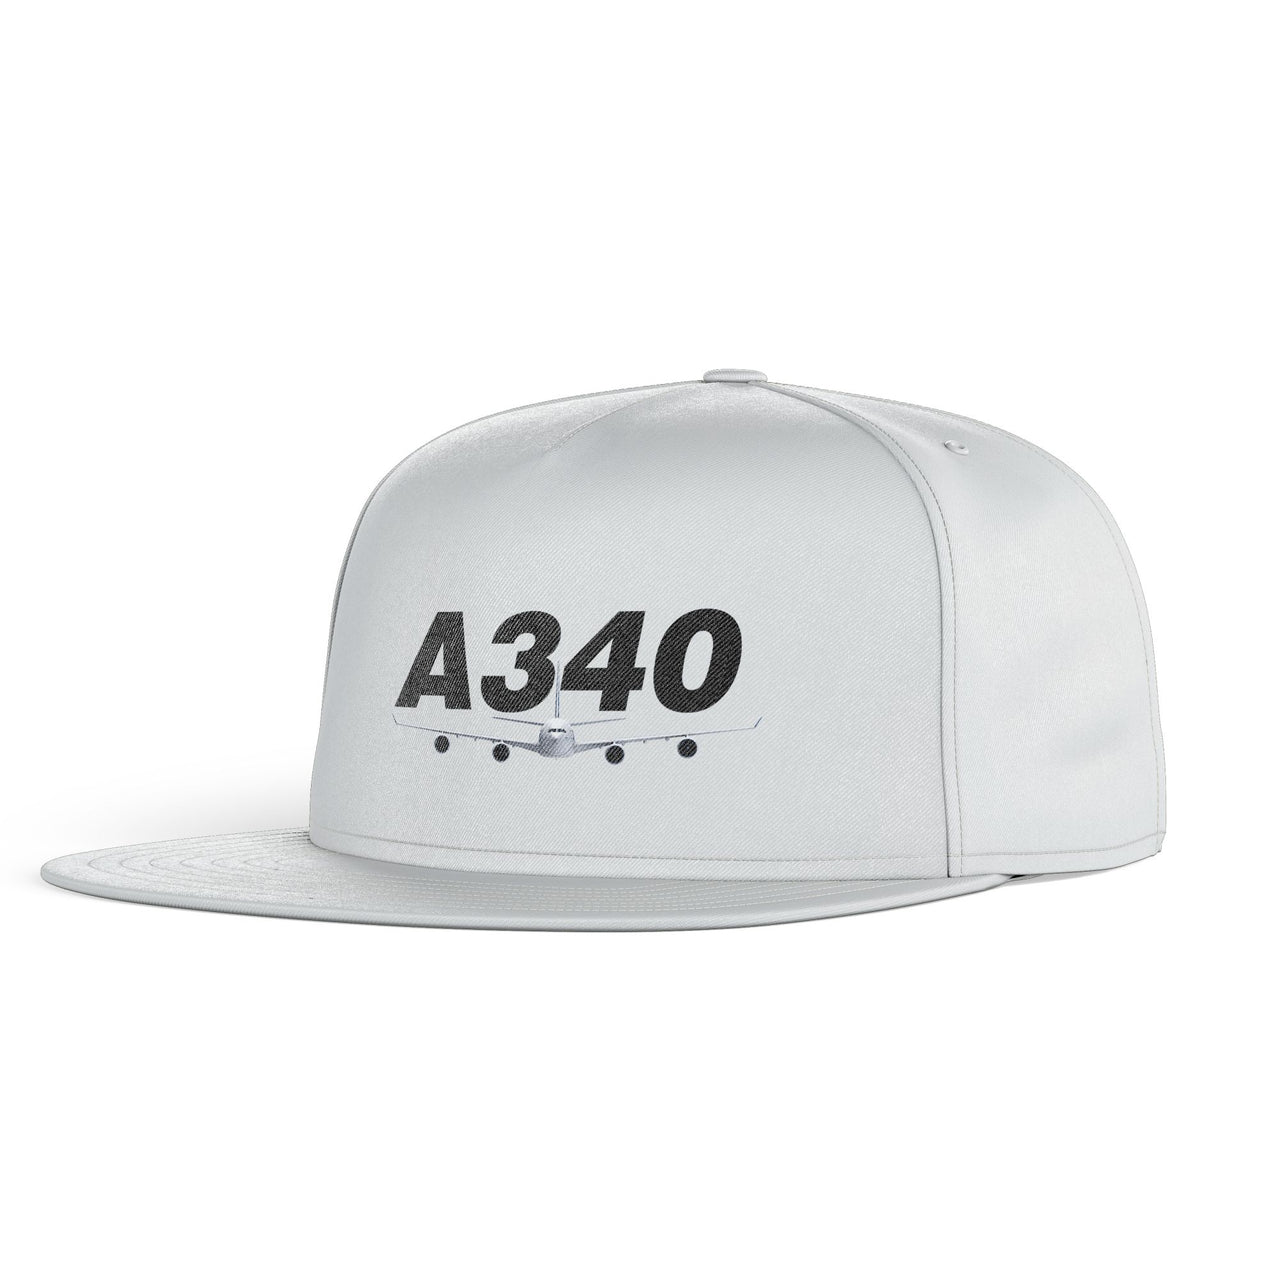 Super Airbus A340 Designed Snapback Caps & Hats